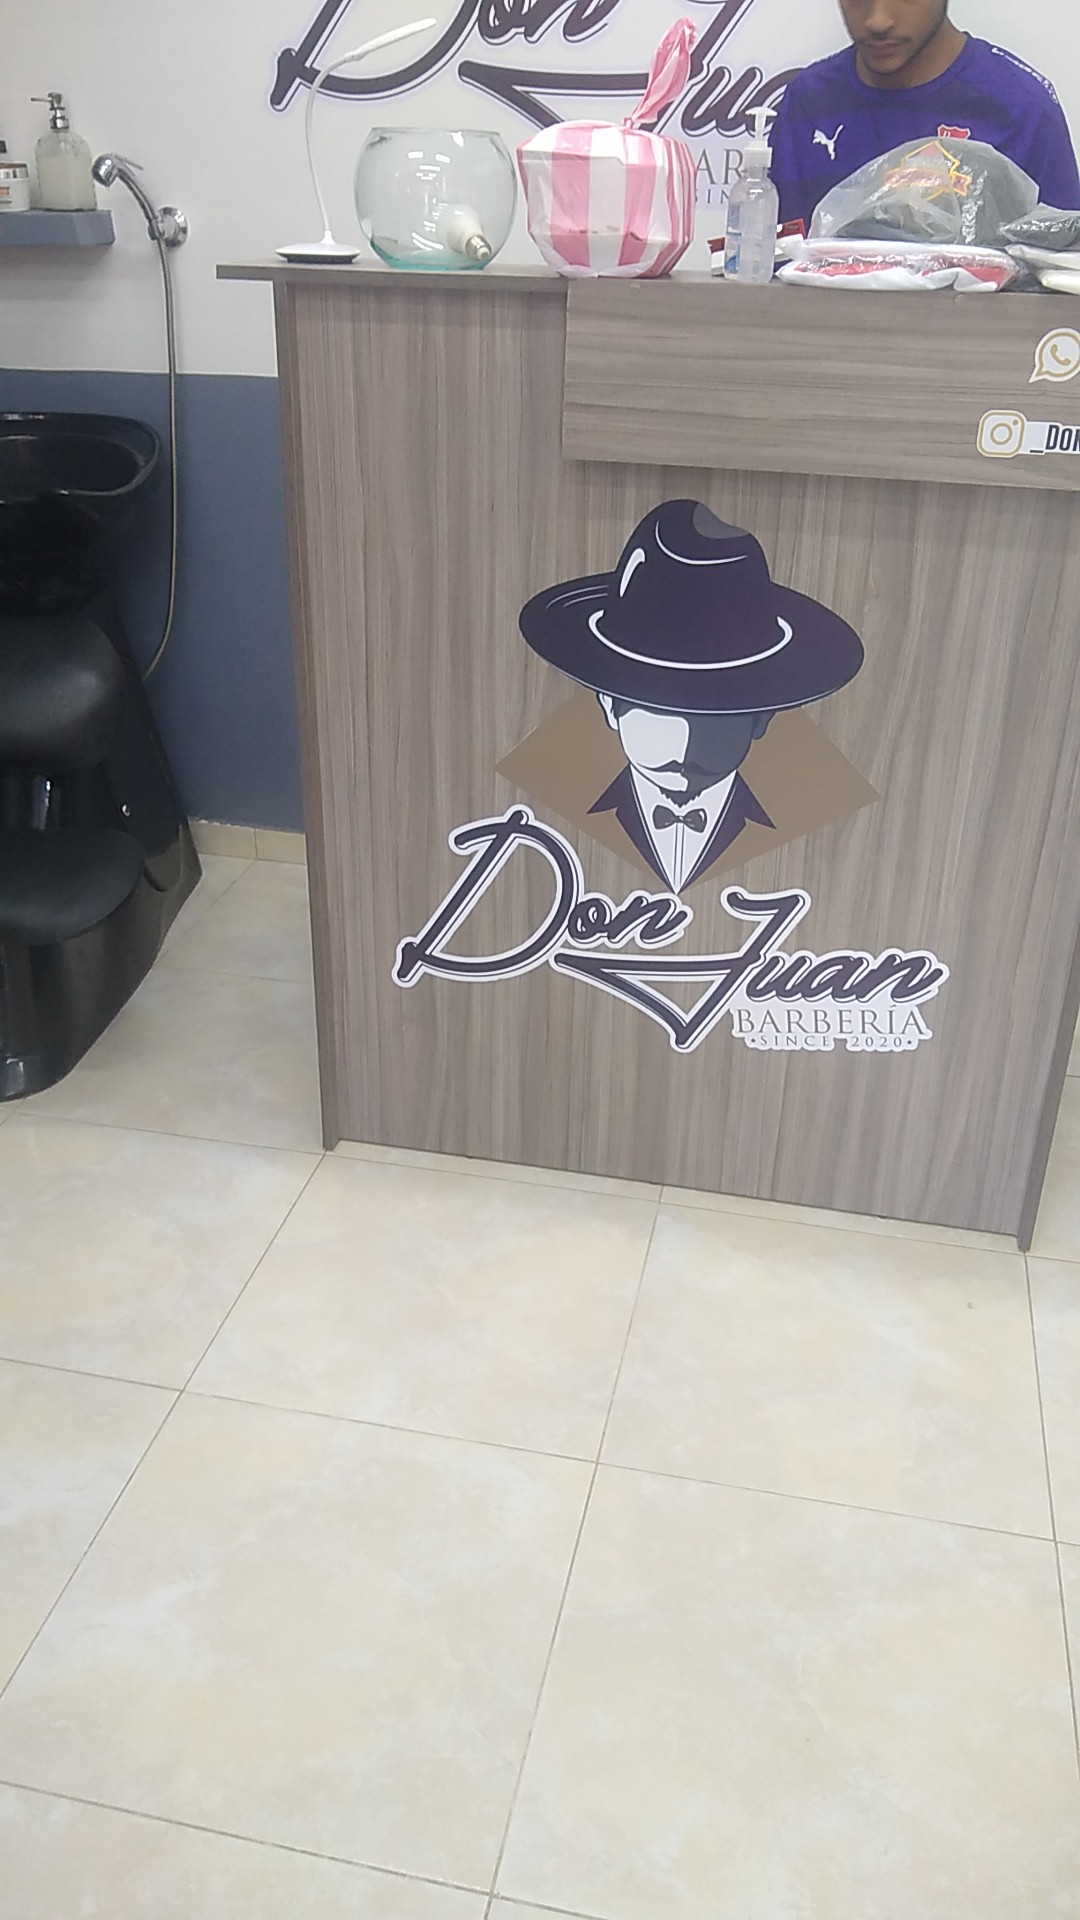 Barbería Don Juan